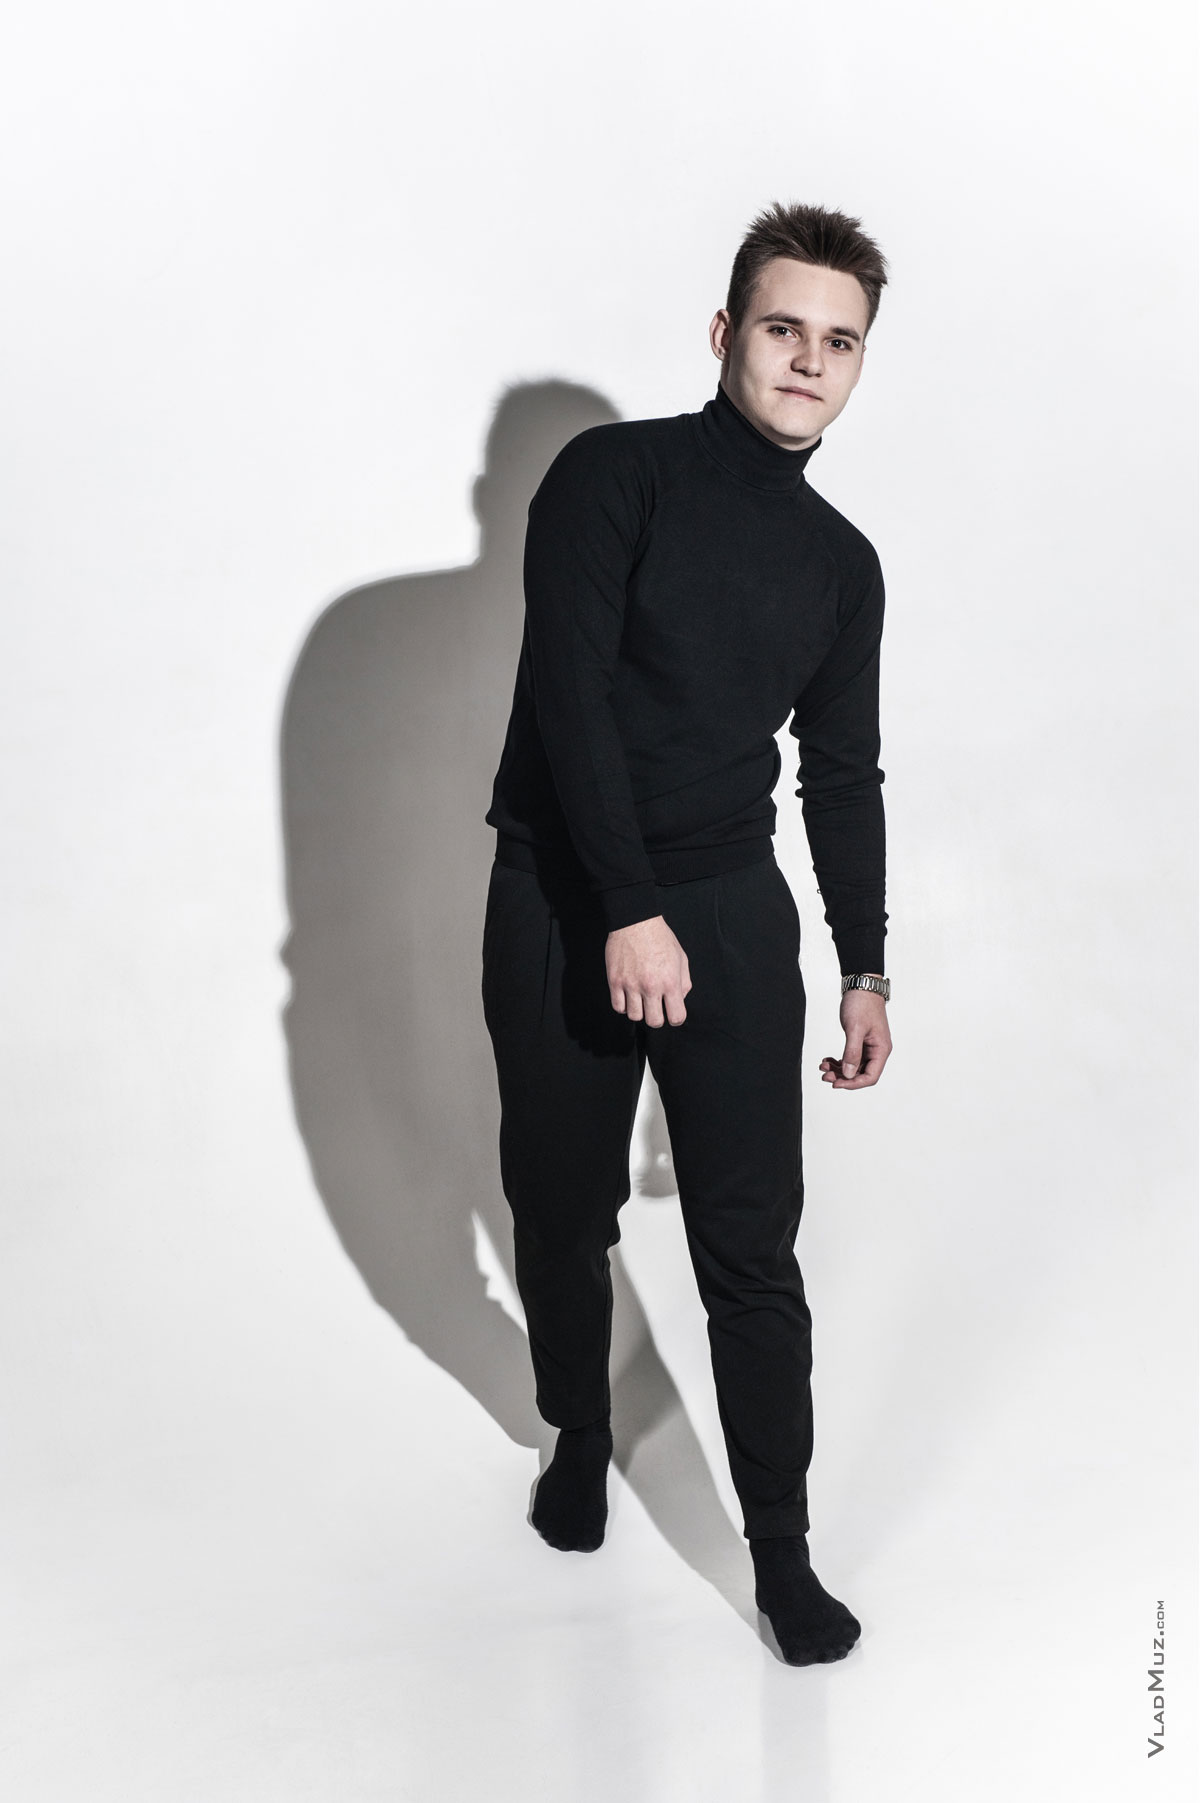 Фото мужчины в черном в идущей позе в полный рост, на белой циклораме, из мужского модельного портфолио